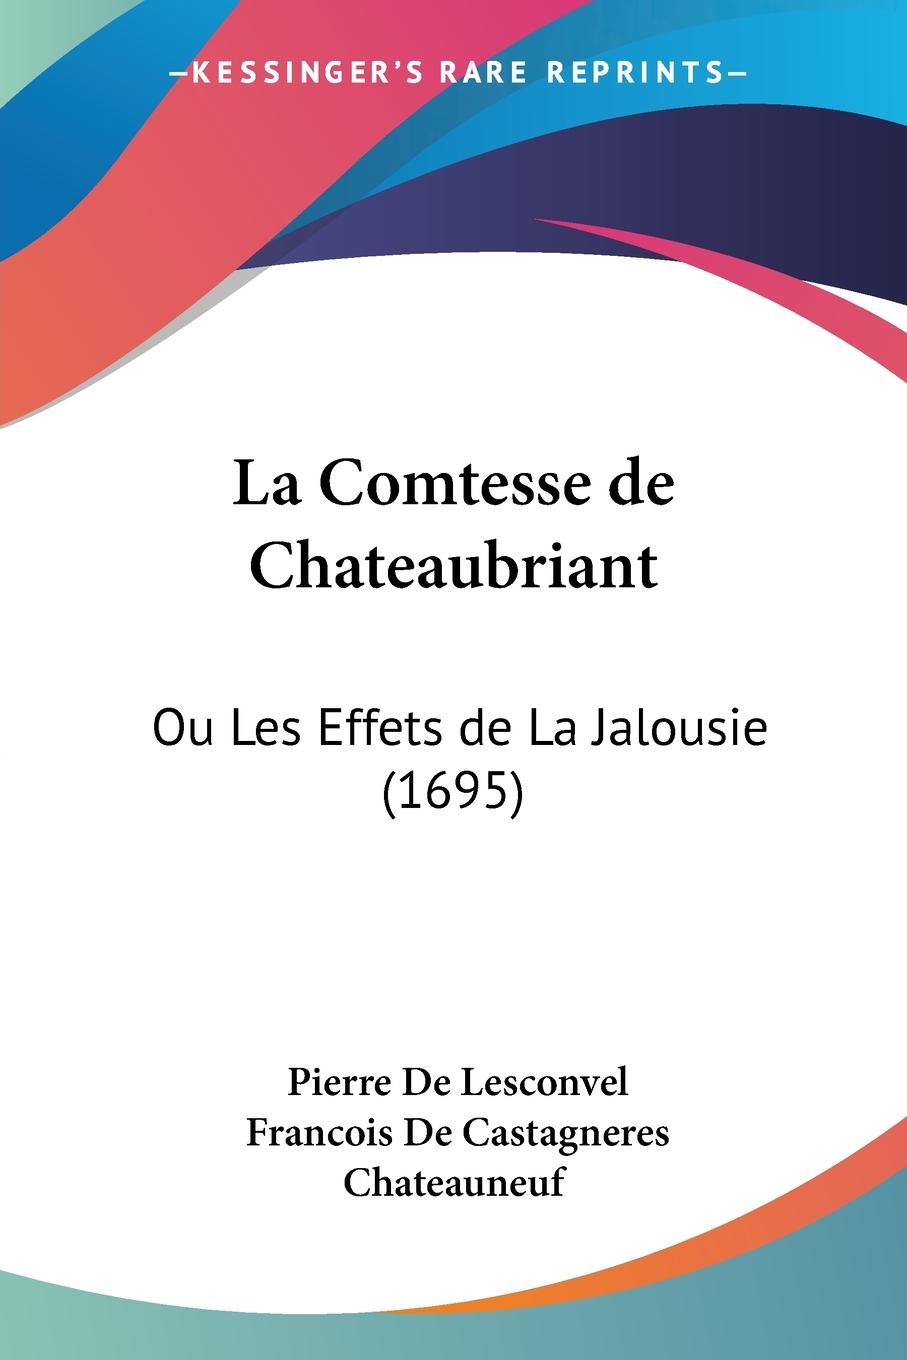 La Comtesse de Chateaubriant - Lesconvel, Pierre De Chateauneuf, Francois De Castagneres